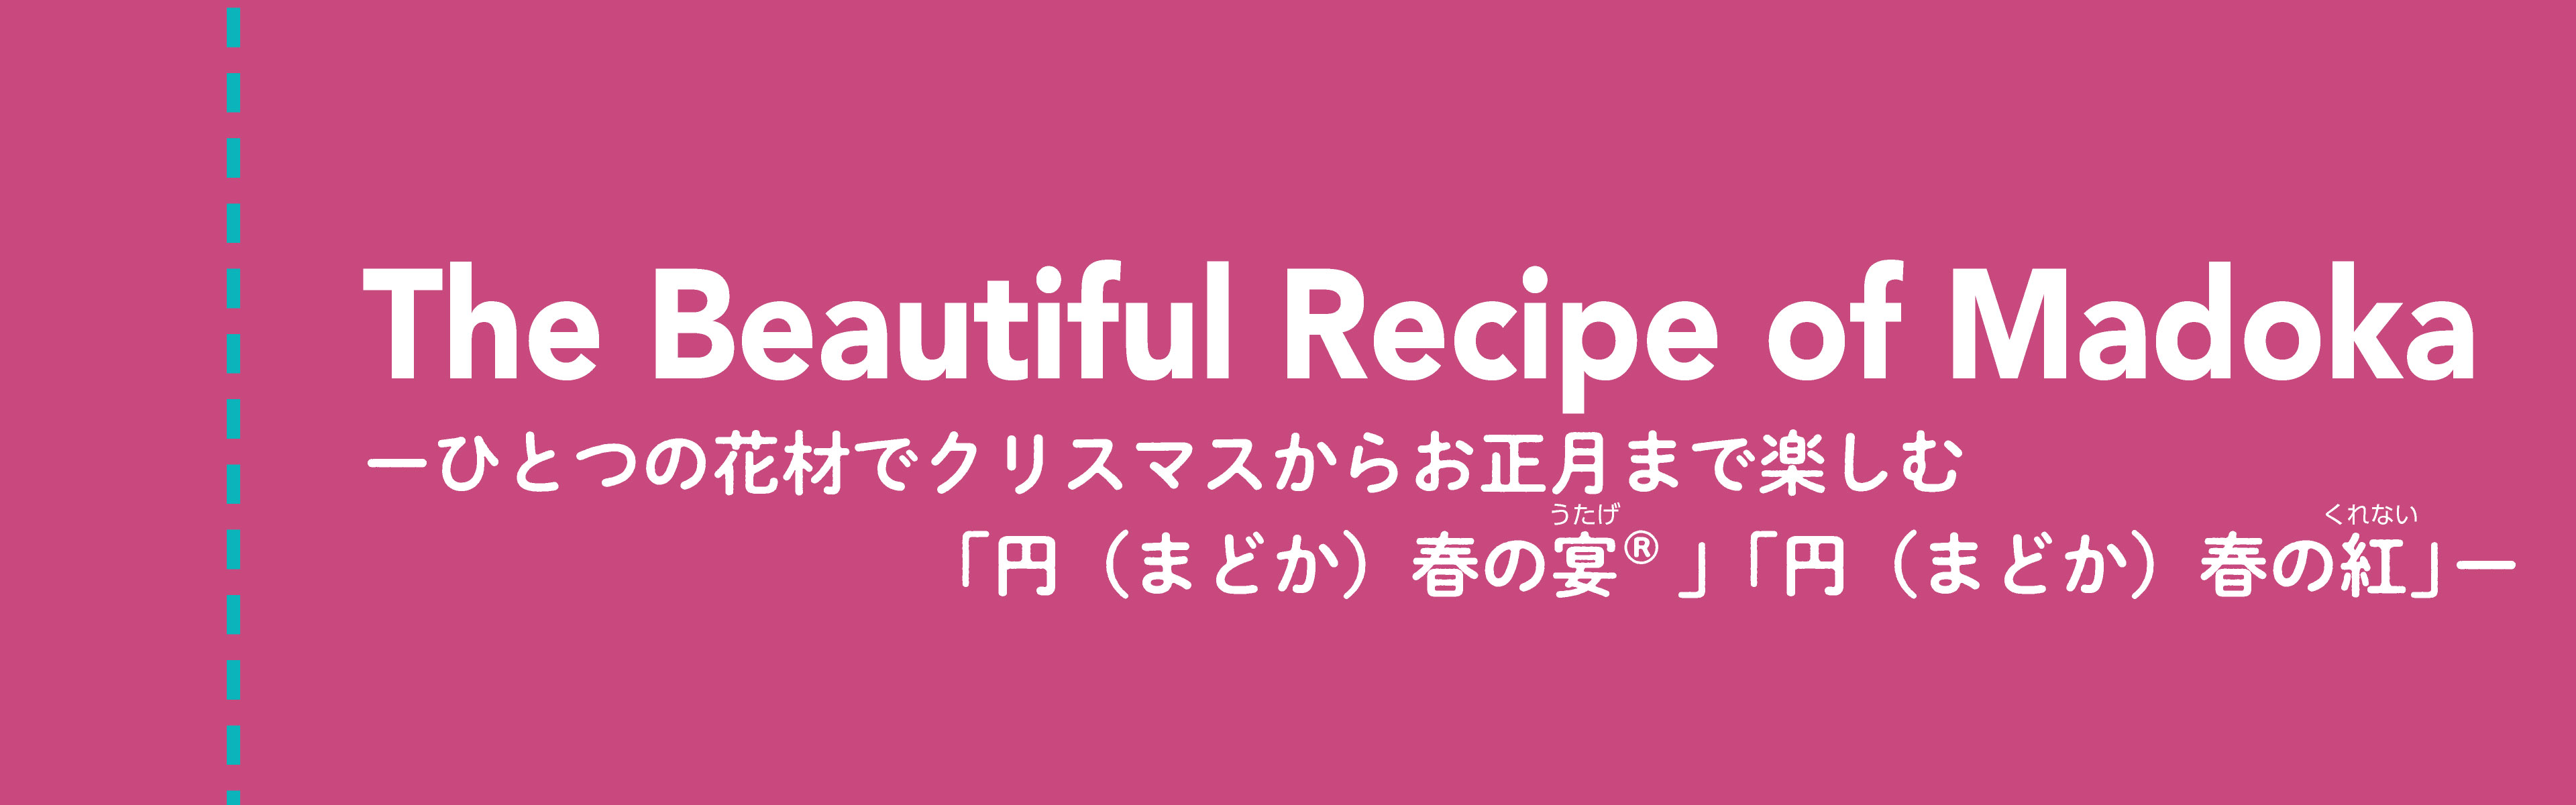 The Beautiful Recipe of Madoka -ハボタンをクリスマスからお正月まで楽しむレシピ-